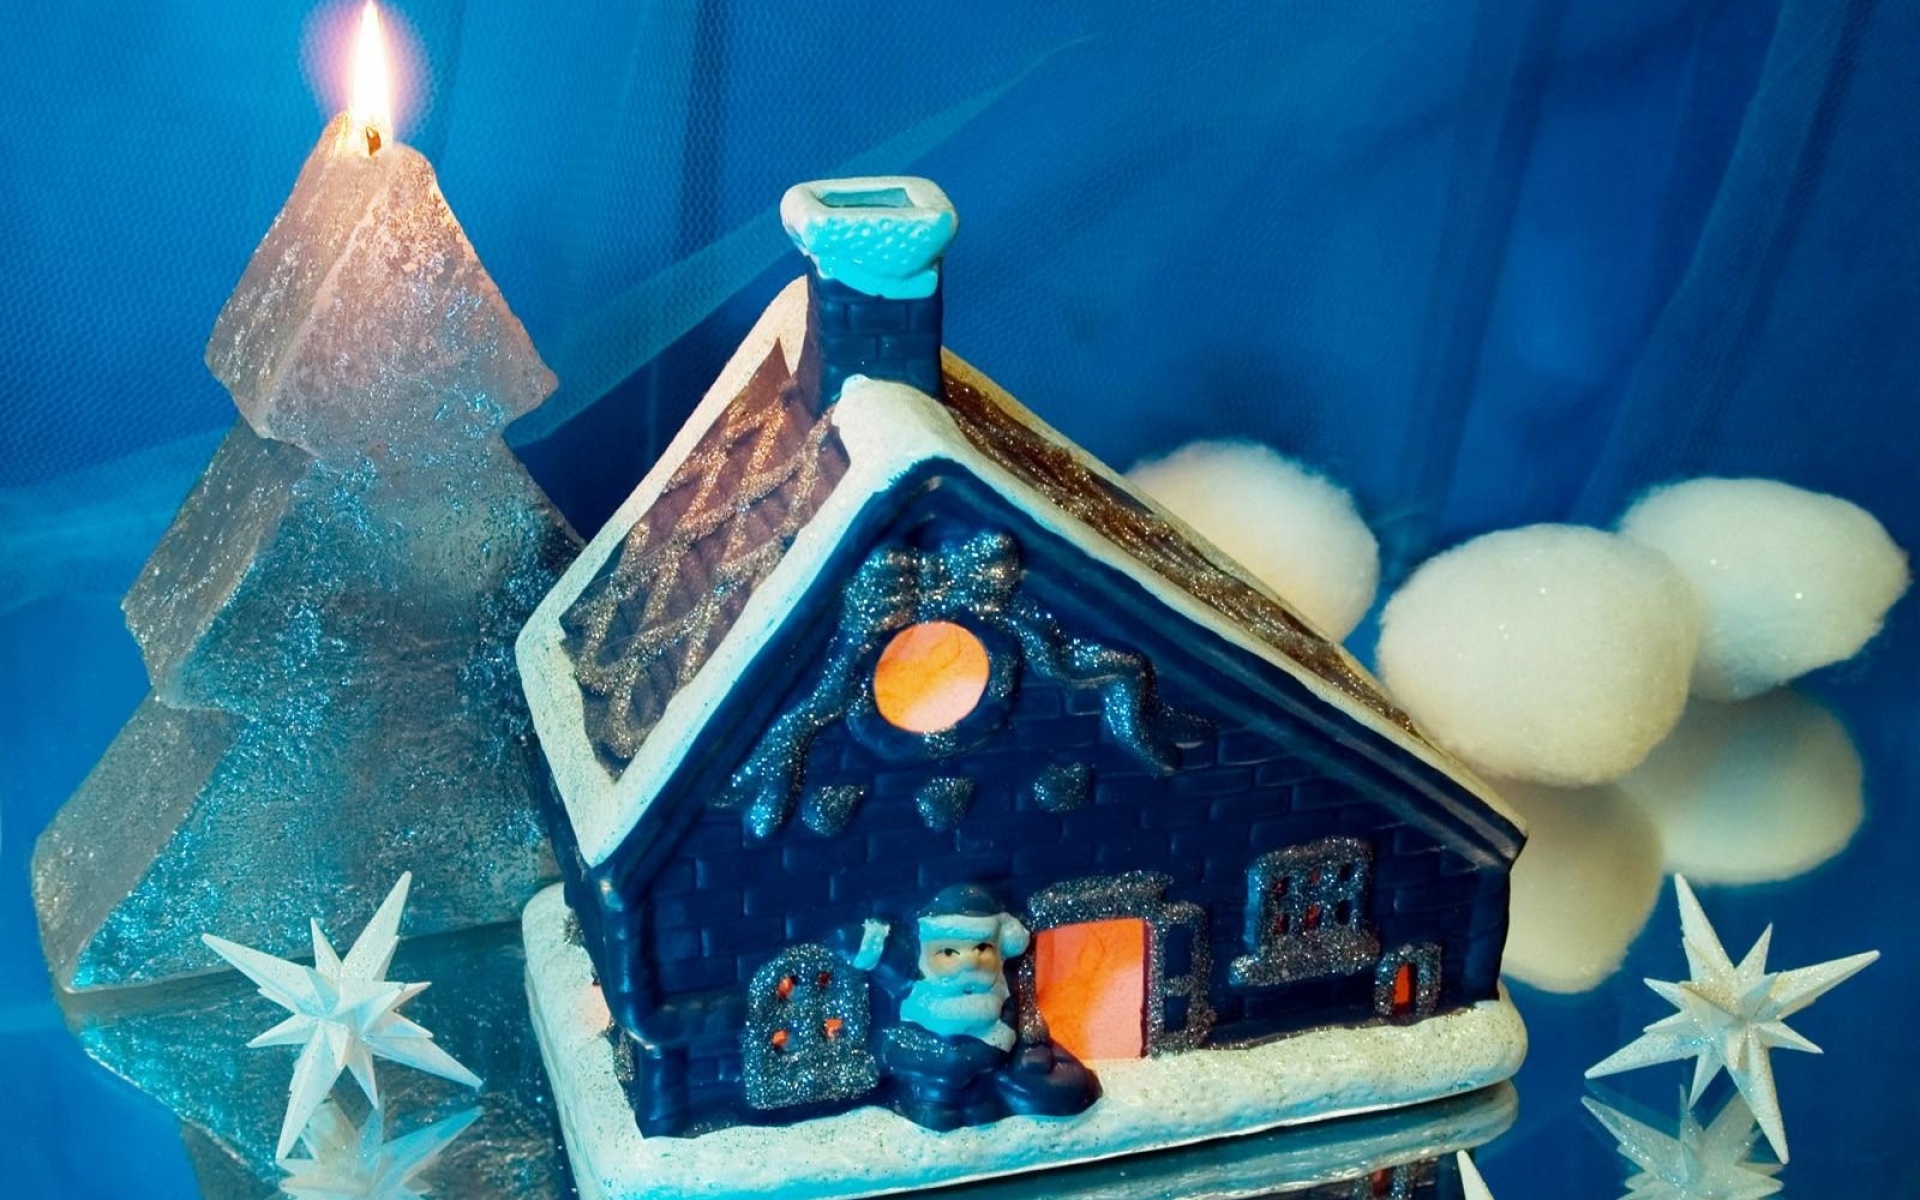 Картинки Дом, свеча, Санта-Клаус, снежинки, поверхность, празднование нового года фото и обои на рабочий стол